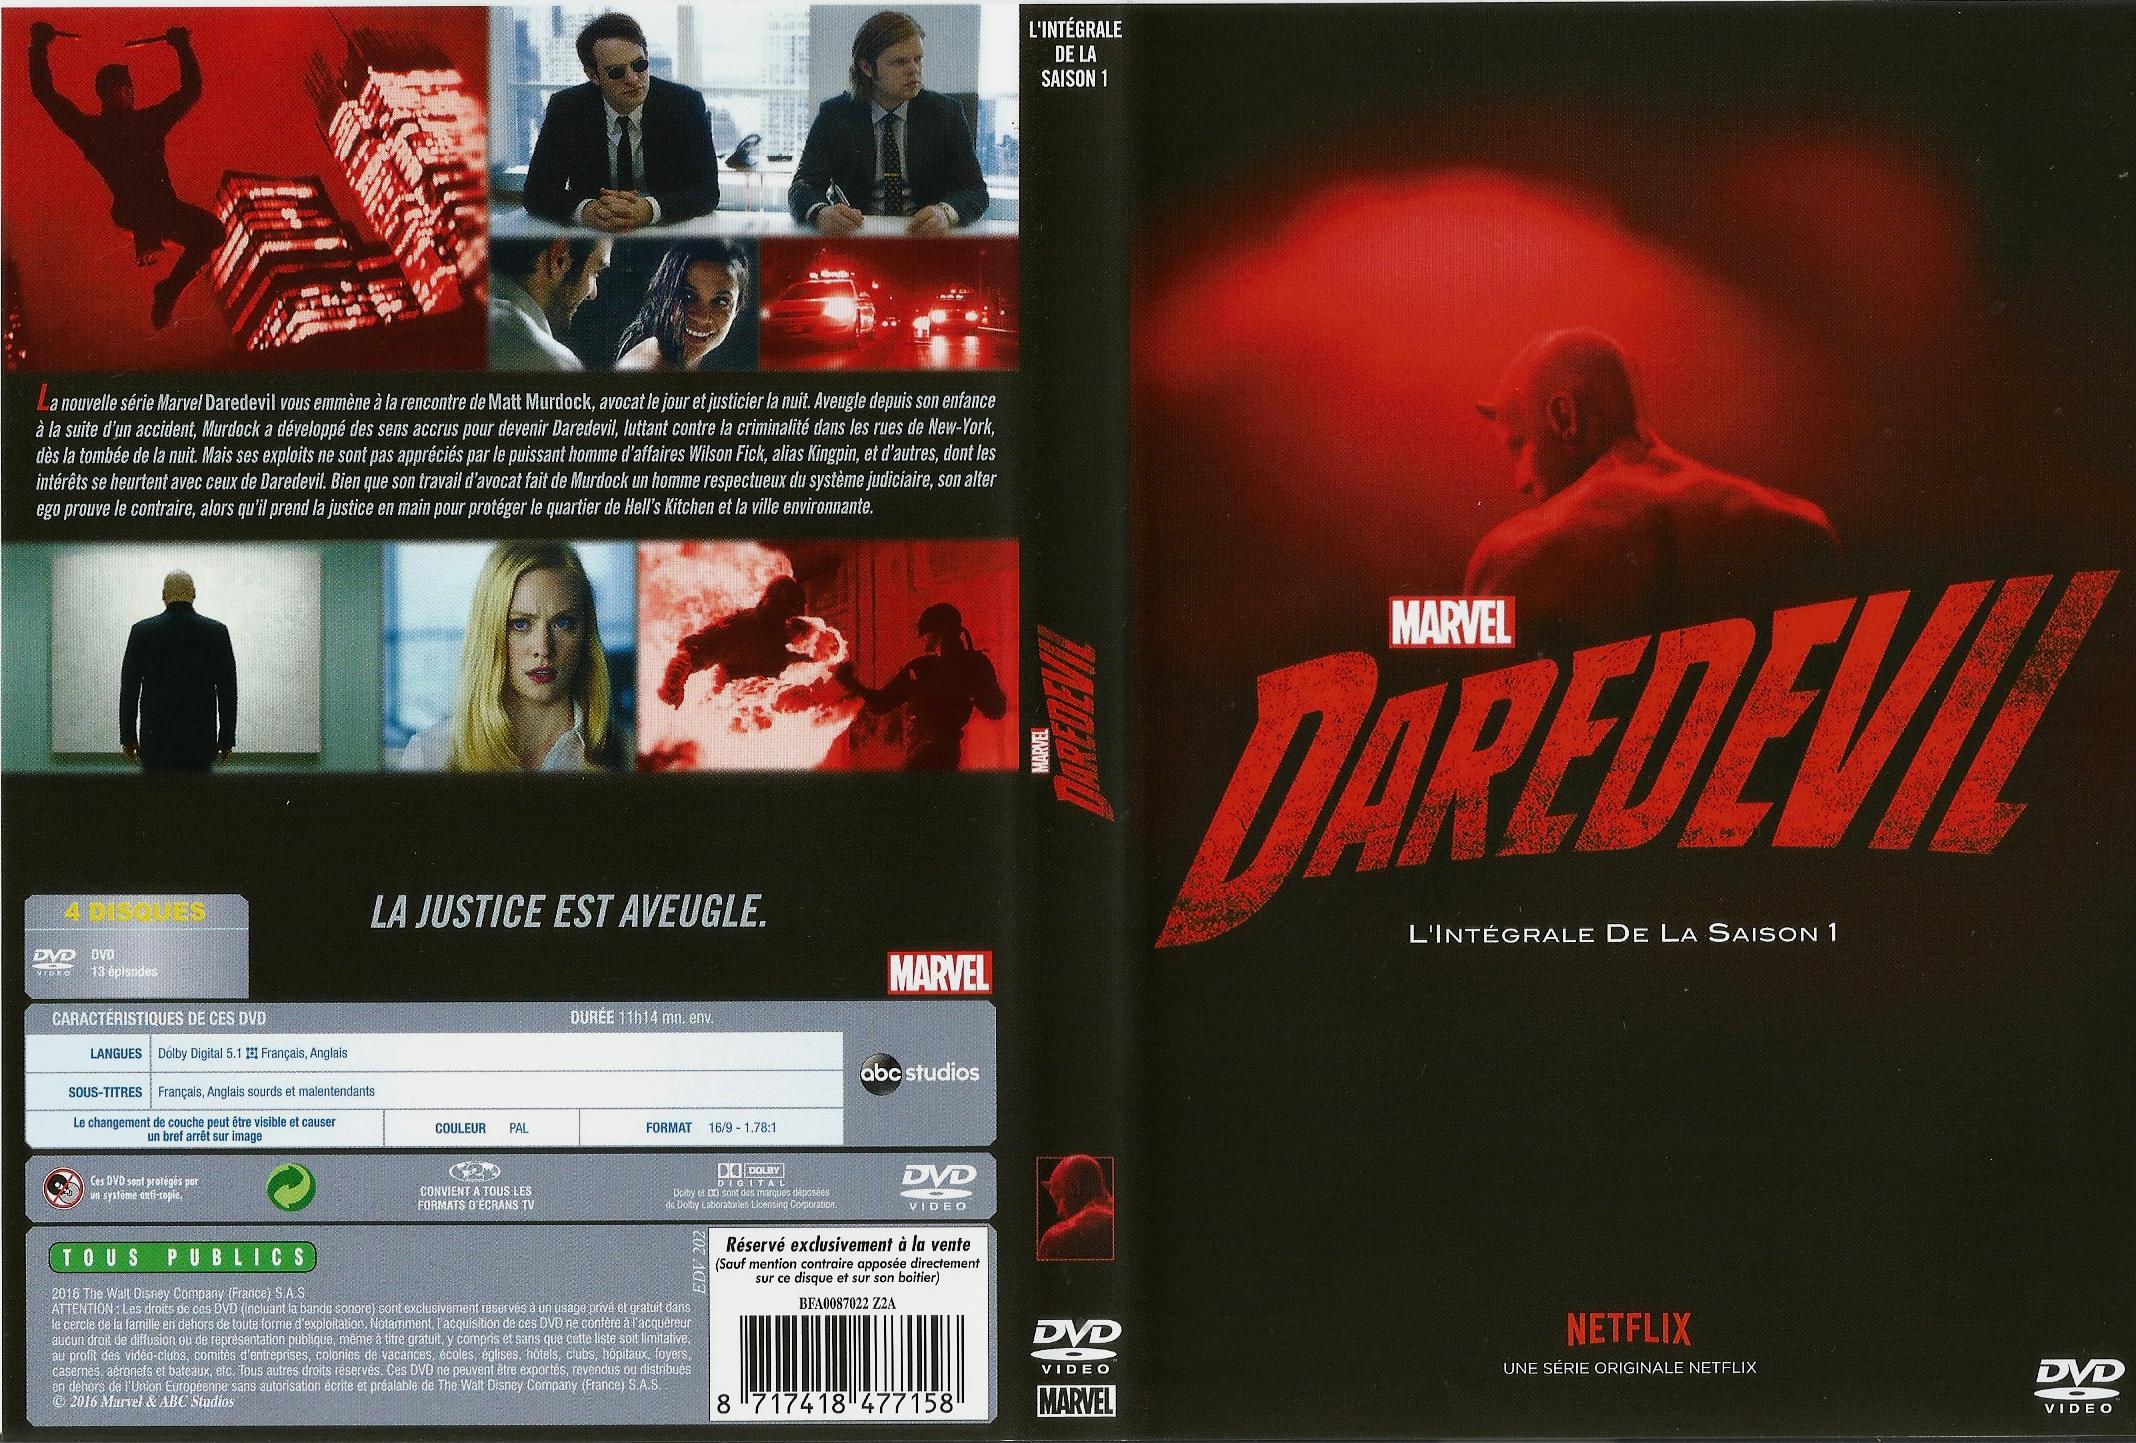 Jaquette DVD Daredevil saison 1